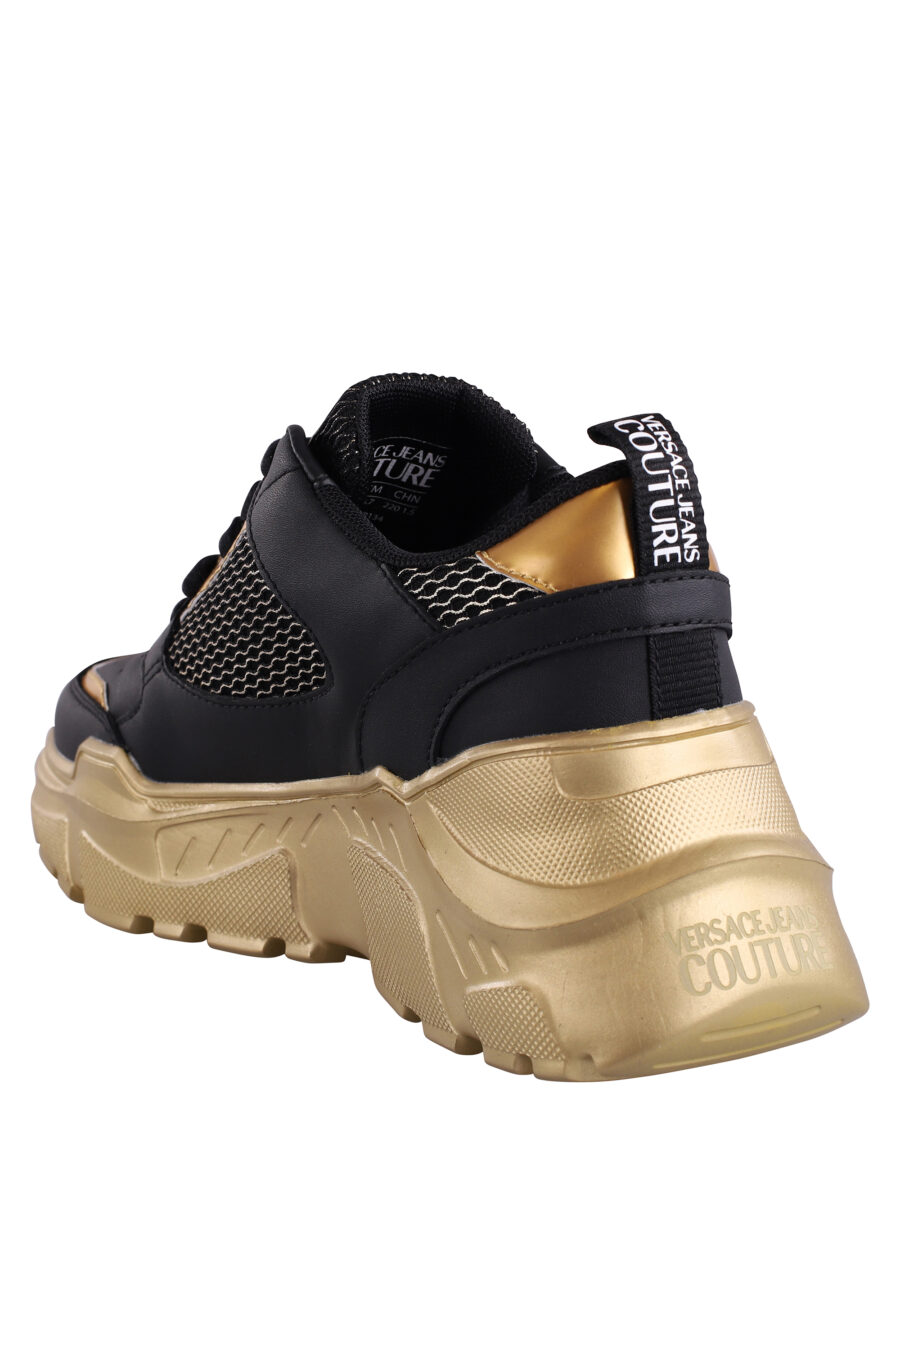 Zapatillas negras con dorado y plataforma - IMG 9084